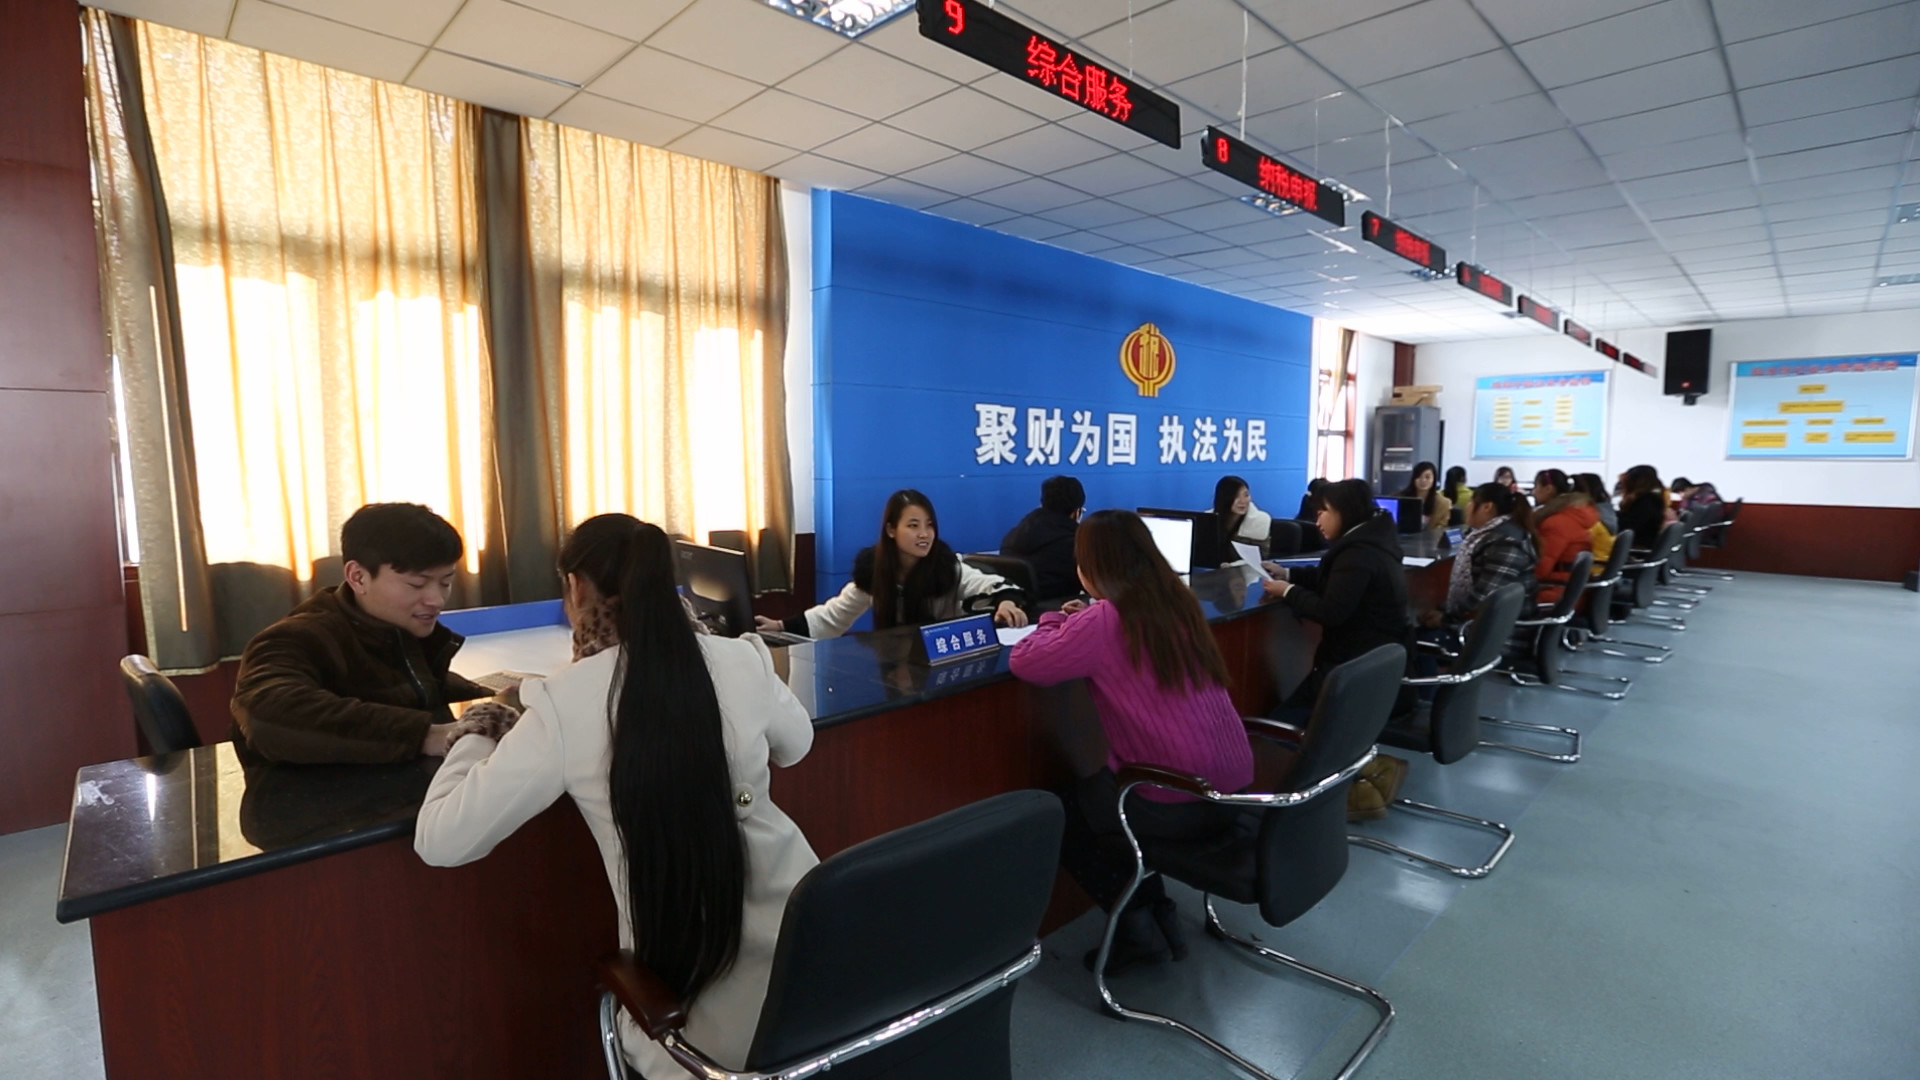 揭秘:郑州这所就业率达97%的民办高校 培养人